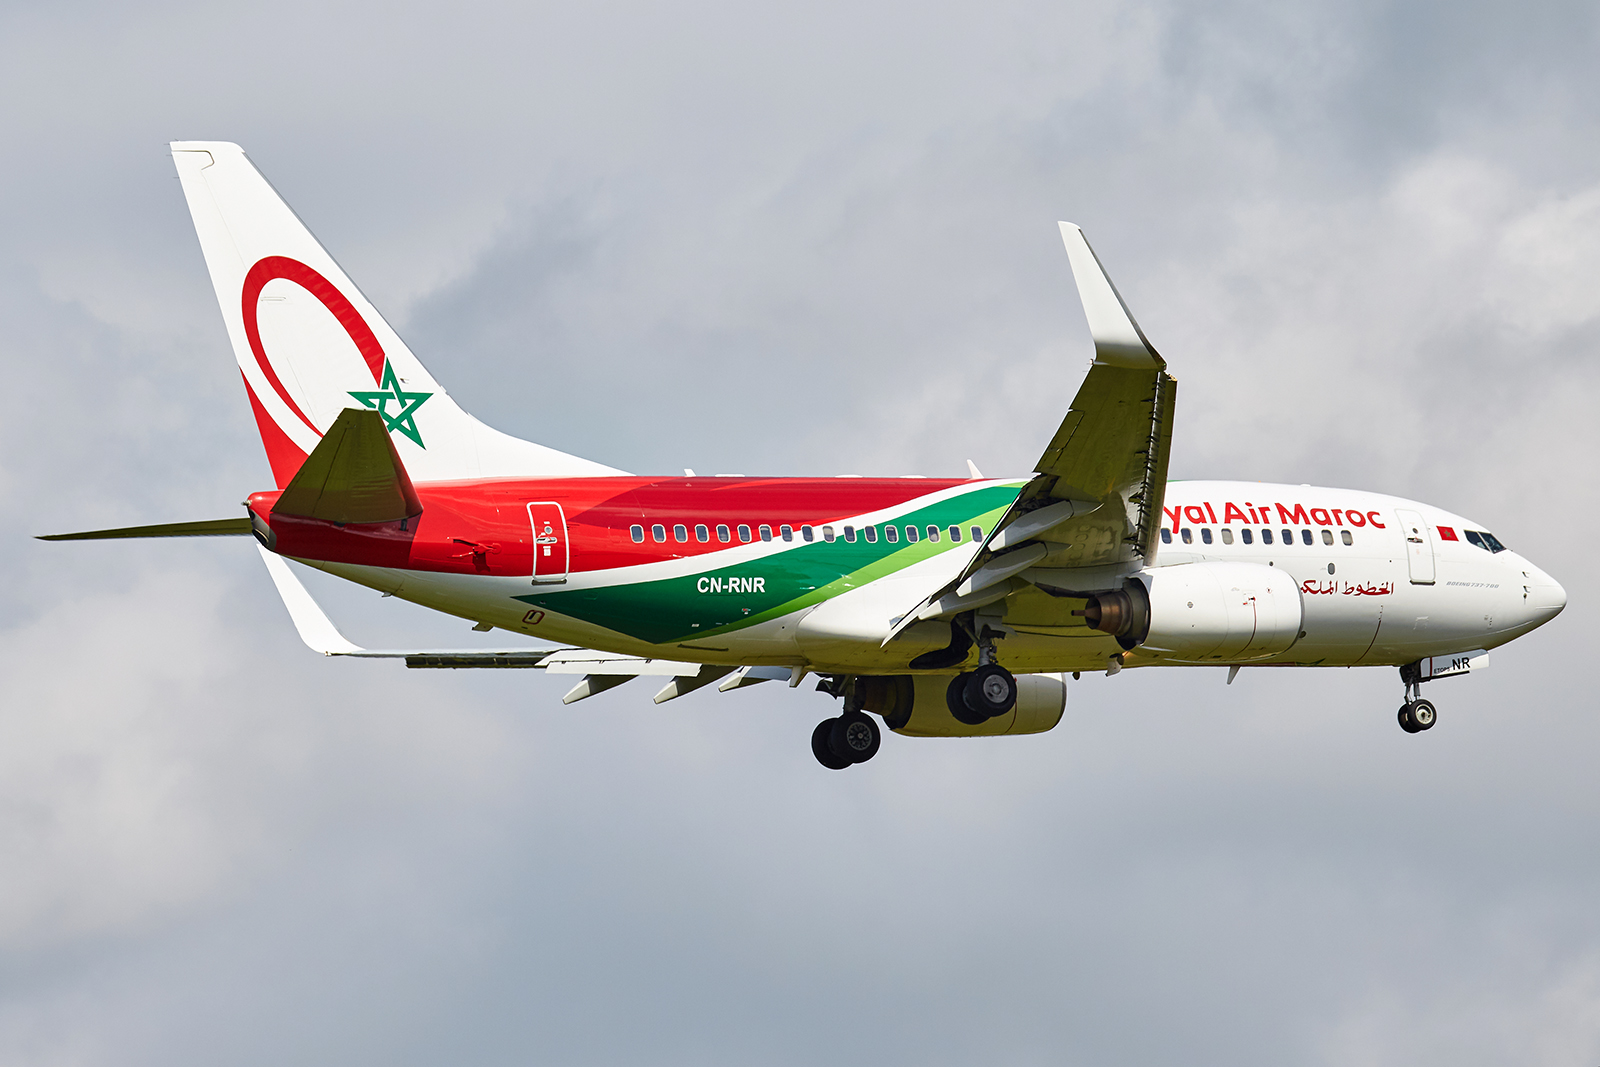 [04/05/2019] Boeing 737-700 (CN-RNR) Royal Air Maroc "Nouvelles couleurs" 1905040227505493216223291